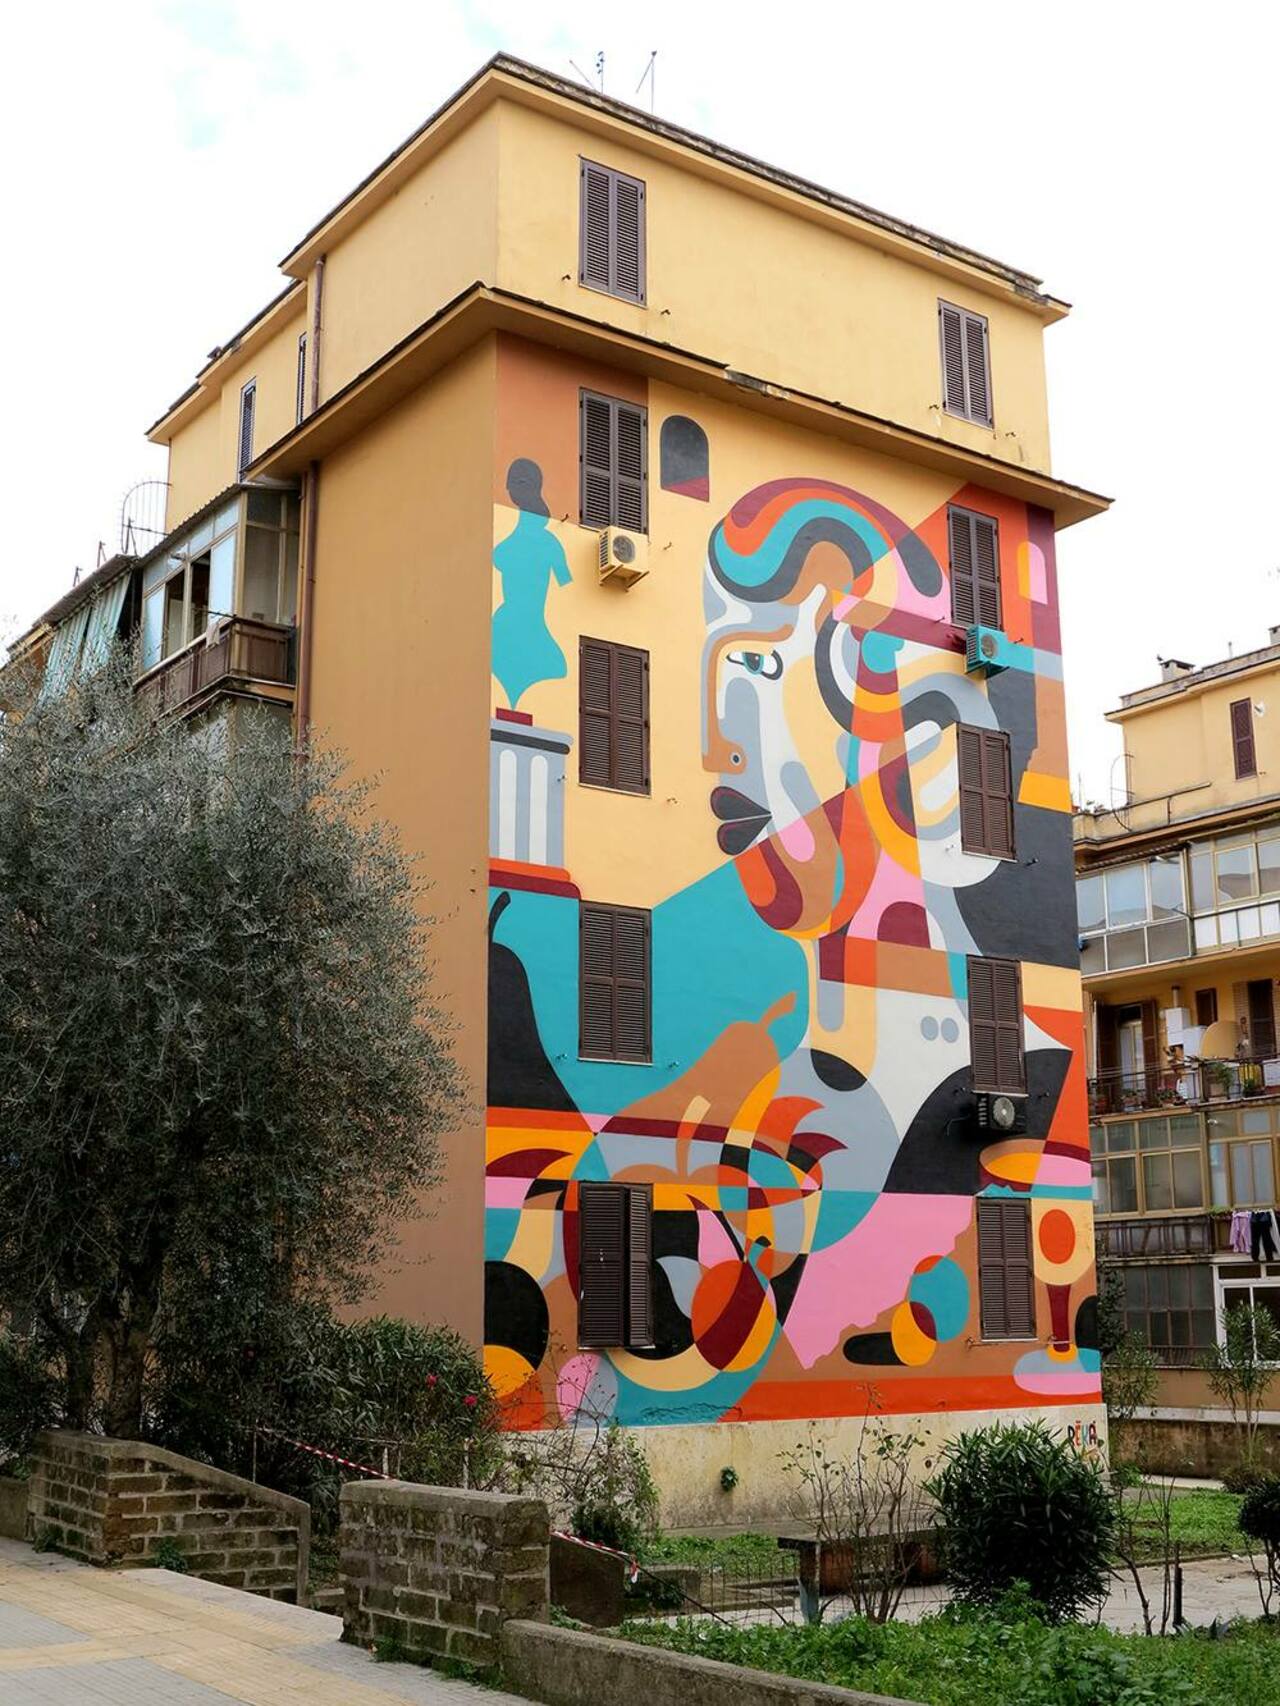 Natura Morta (still life) #mural by @Mr_Reka in Tormarancia, #Rome, Italy #graffiti #streetart #urbanart http://t.co/dThfLida77